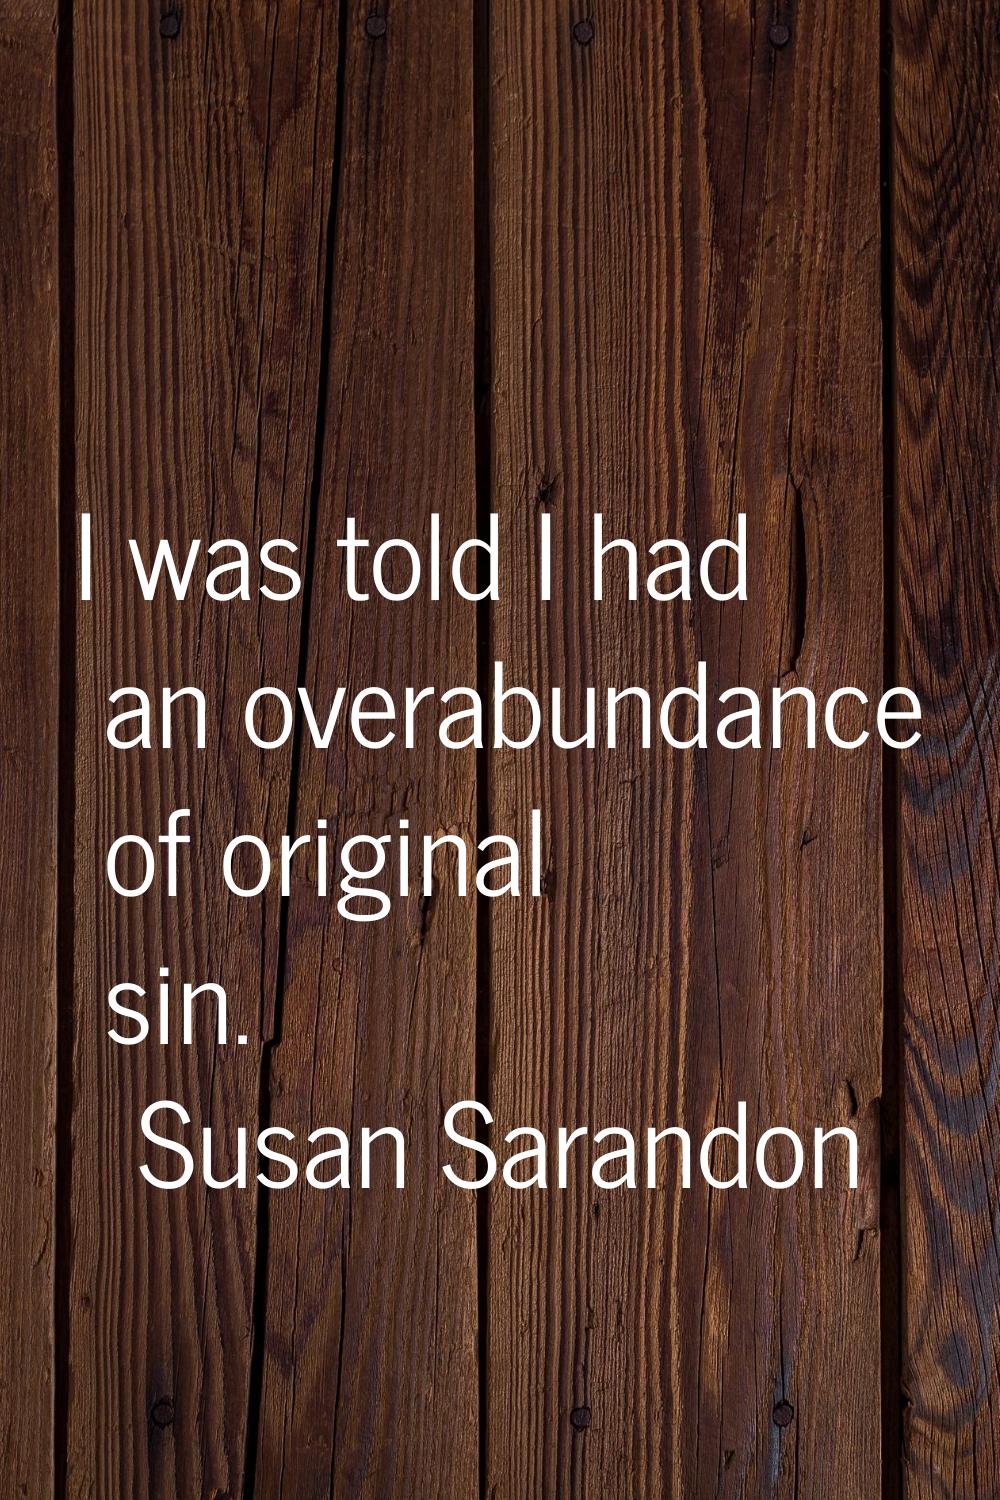 I was told I had an overabundance of original sin.